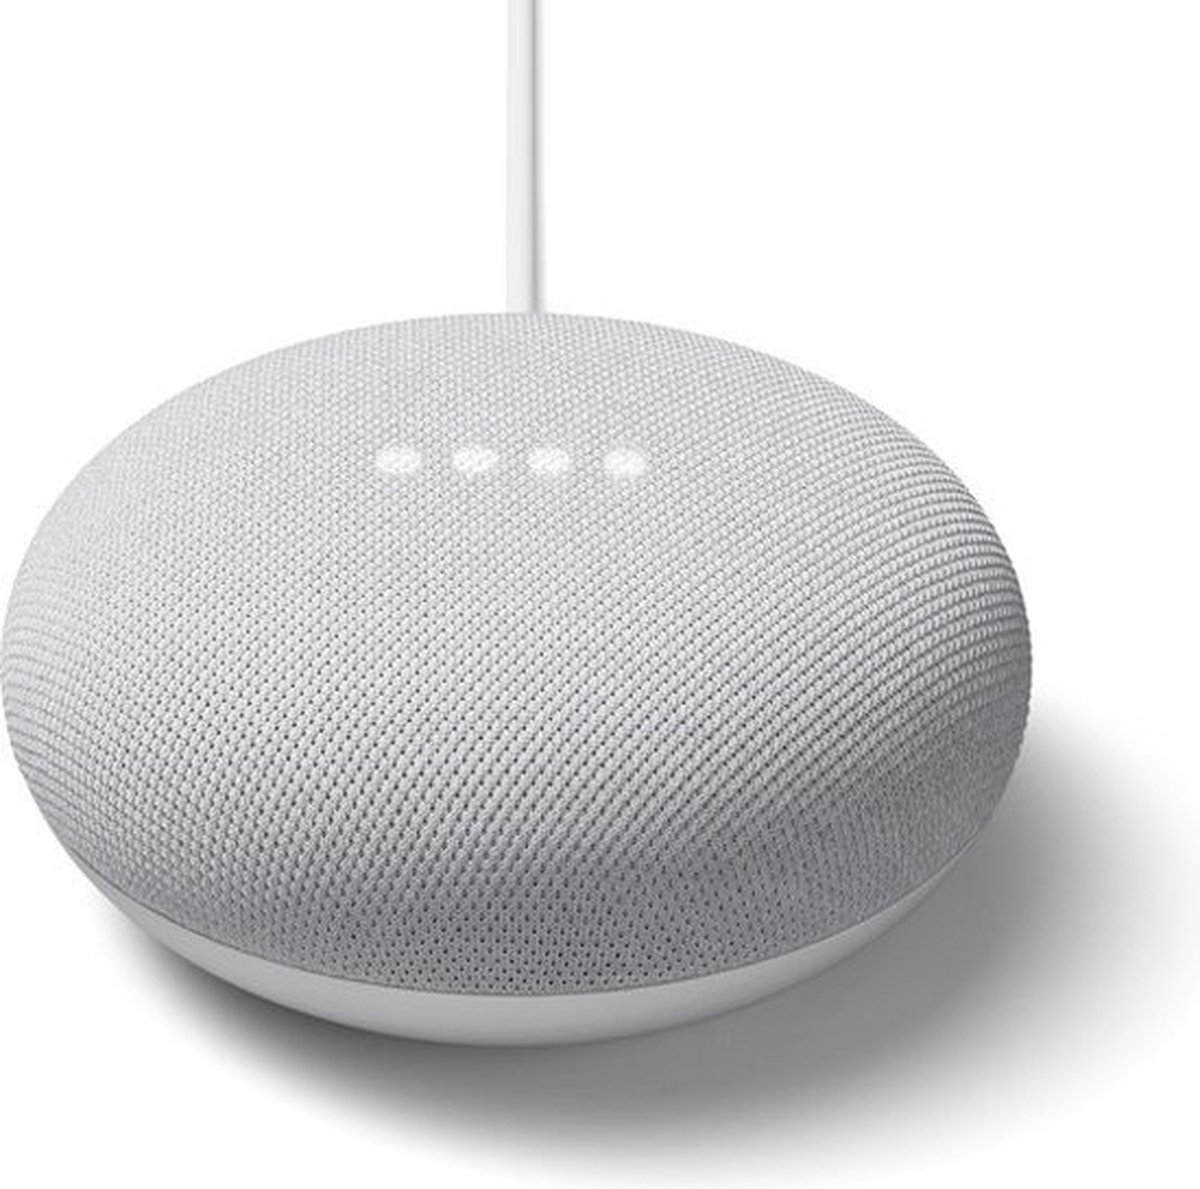 Een Google Nest Mini met een snoer dit is een Google Smart Speaker.